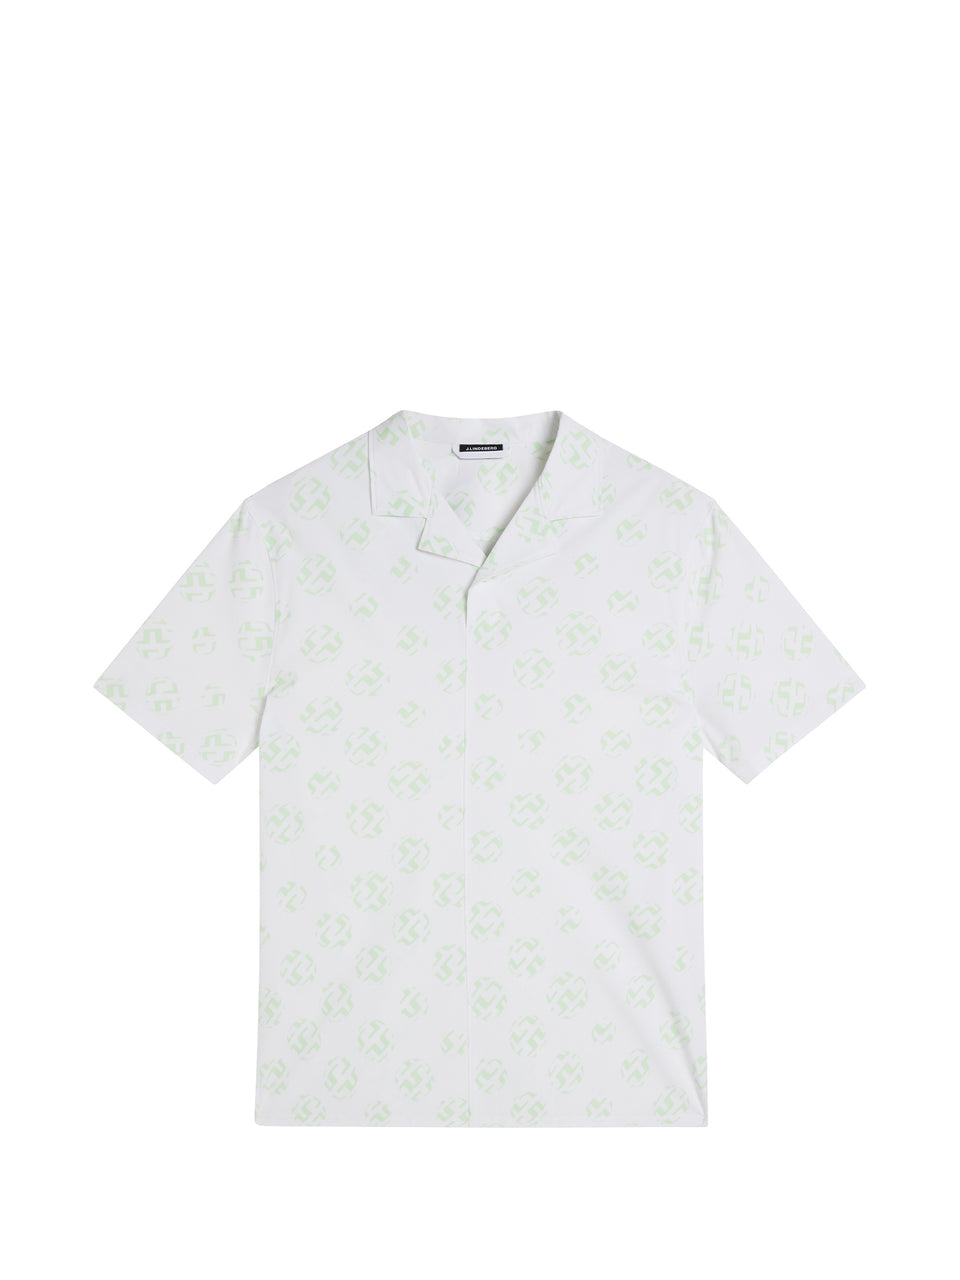 Resort Reg Fit Shirt Print / White Sphere Dot